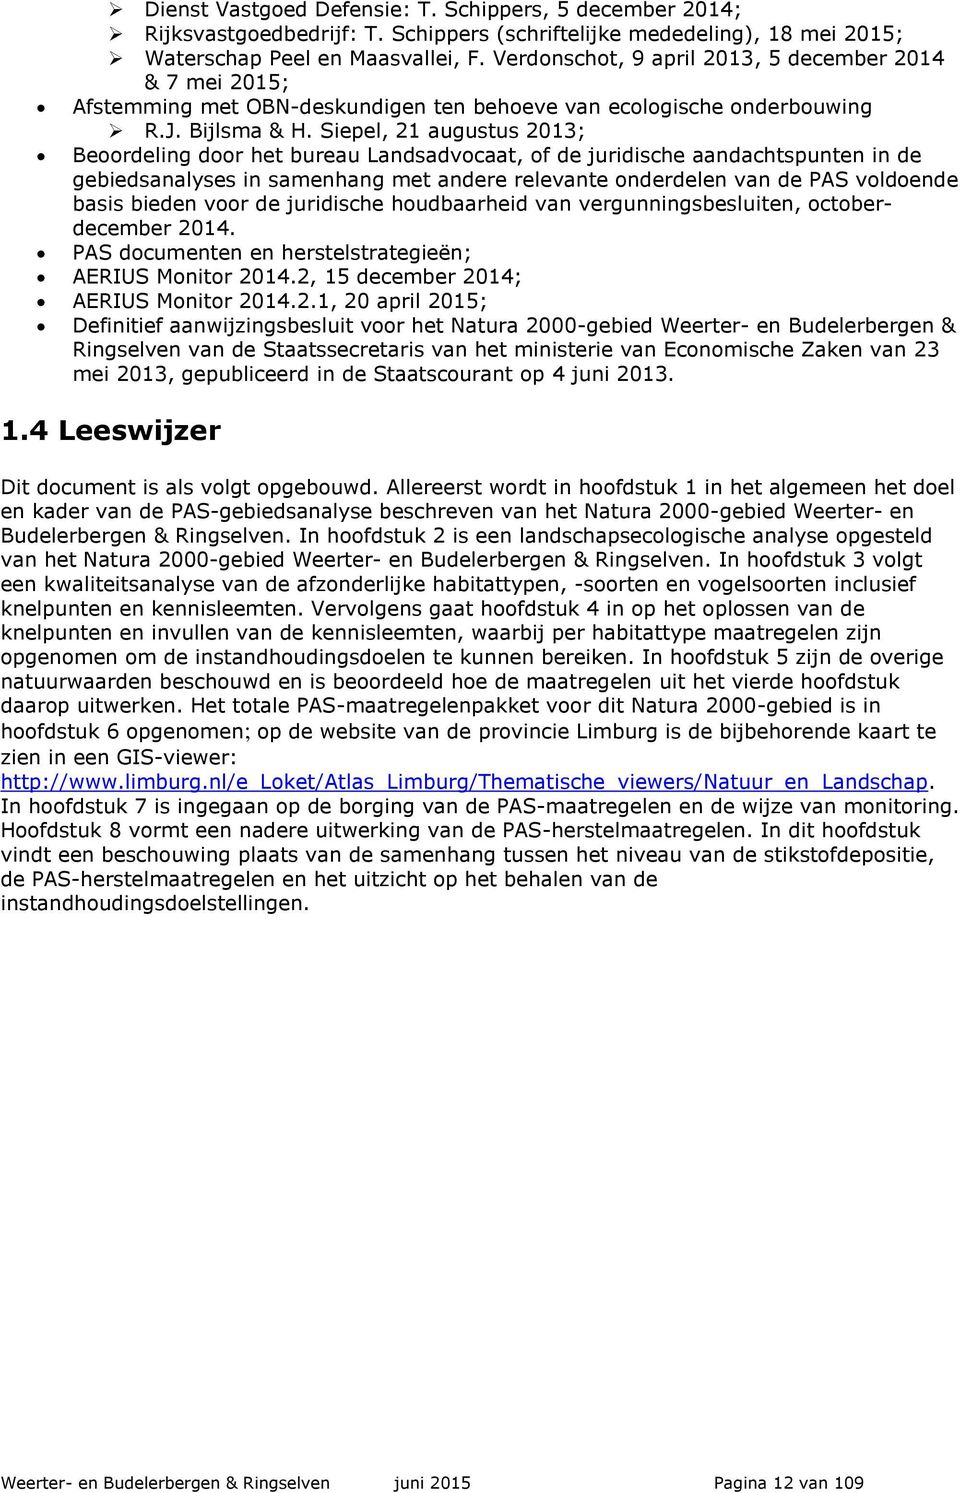 Siepel, 21 augustus 2013; Beoordeling door het bureau Landsadvocaat, of de juridische aandachtspunten in de gebiedsanalyses in samenhang met andere relevante onderdelen van de PAS voldoende basis